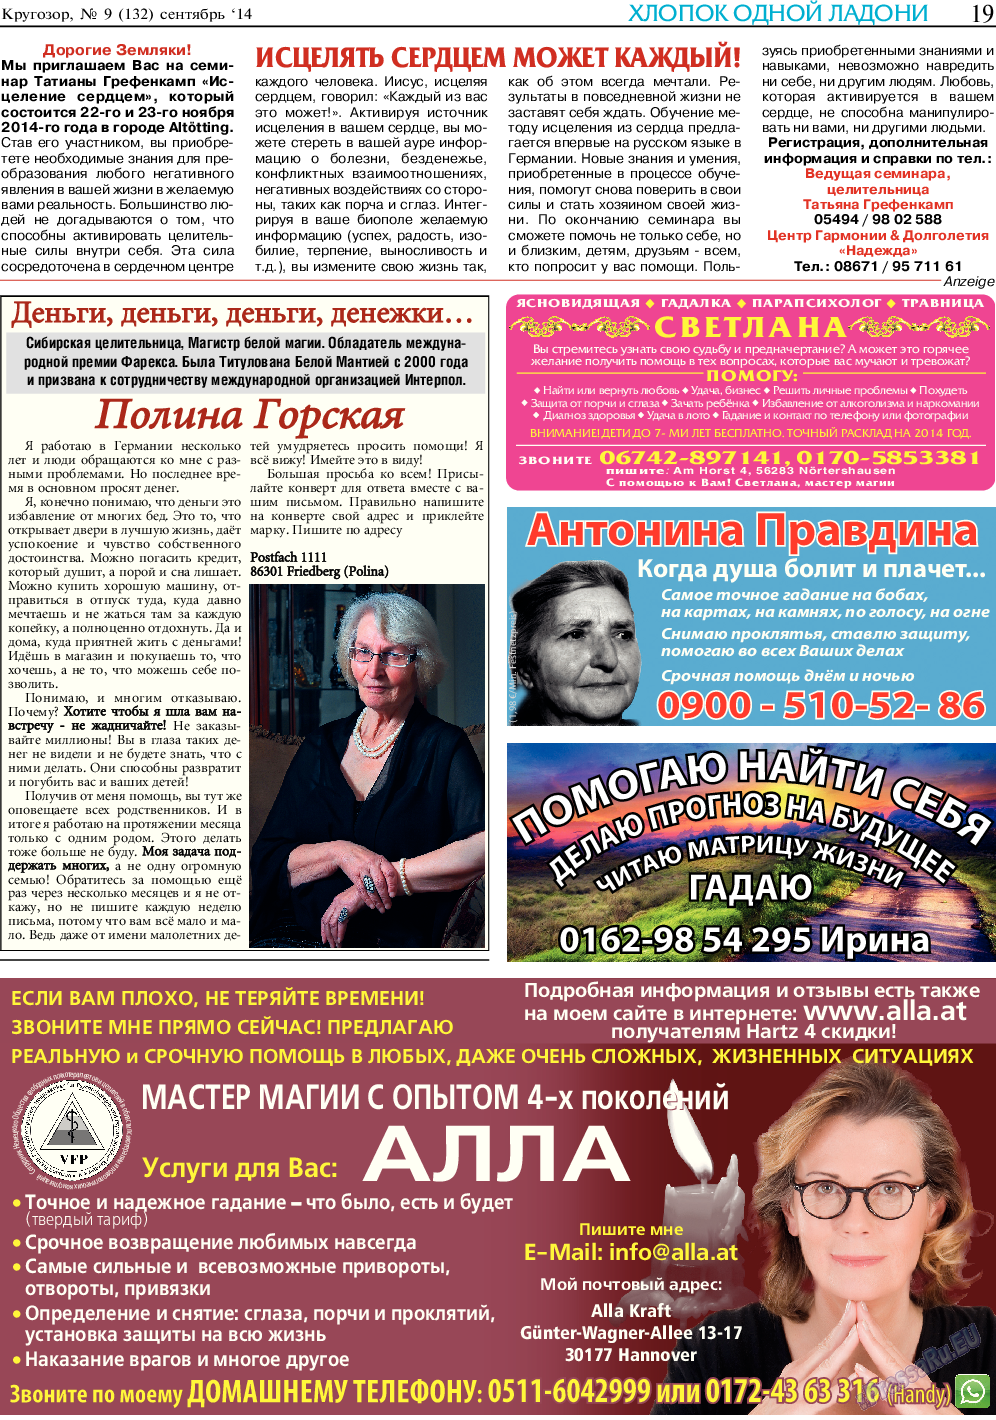 Кругозор (газета). 2014 год, номер 9, стр. 19